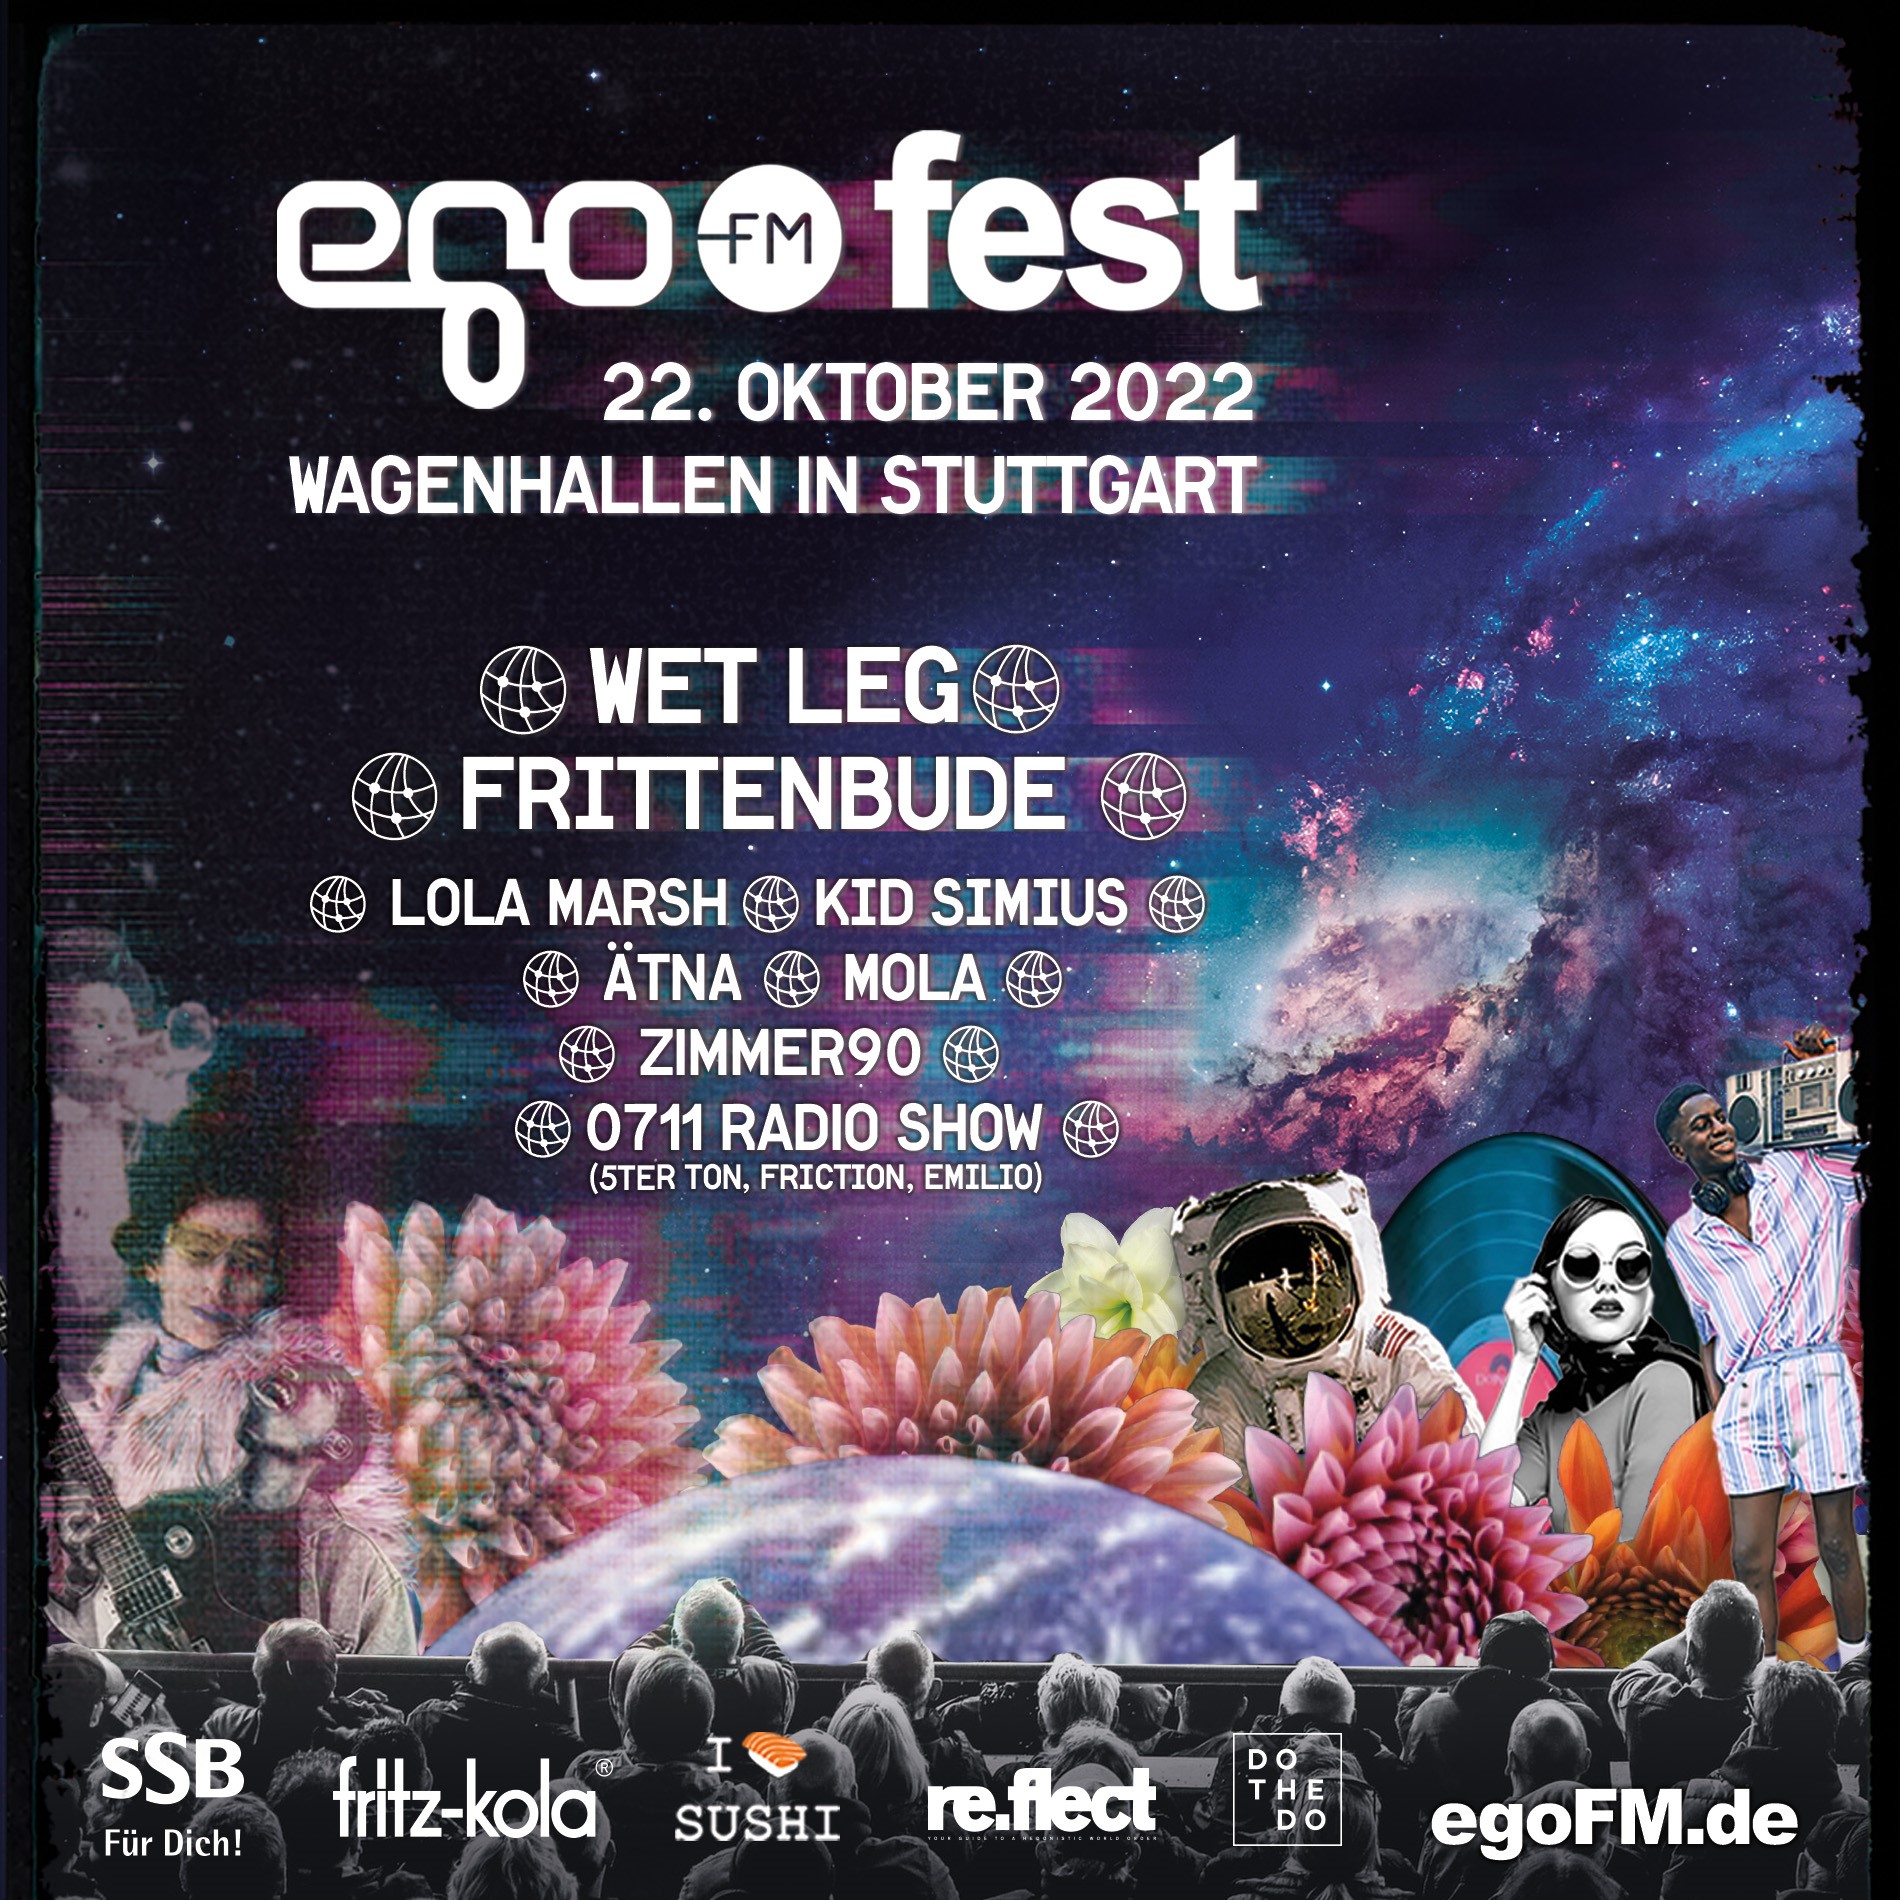 egoFM Fest Stuttgart